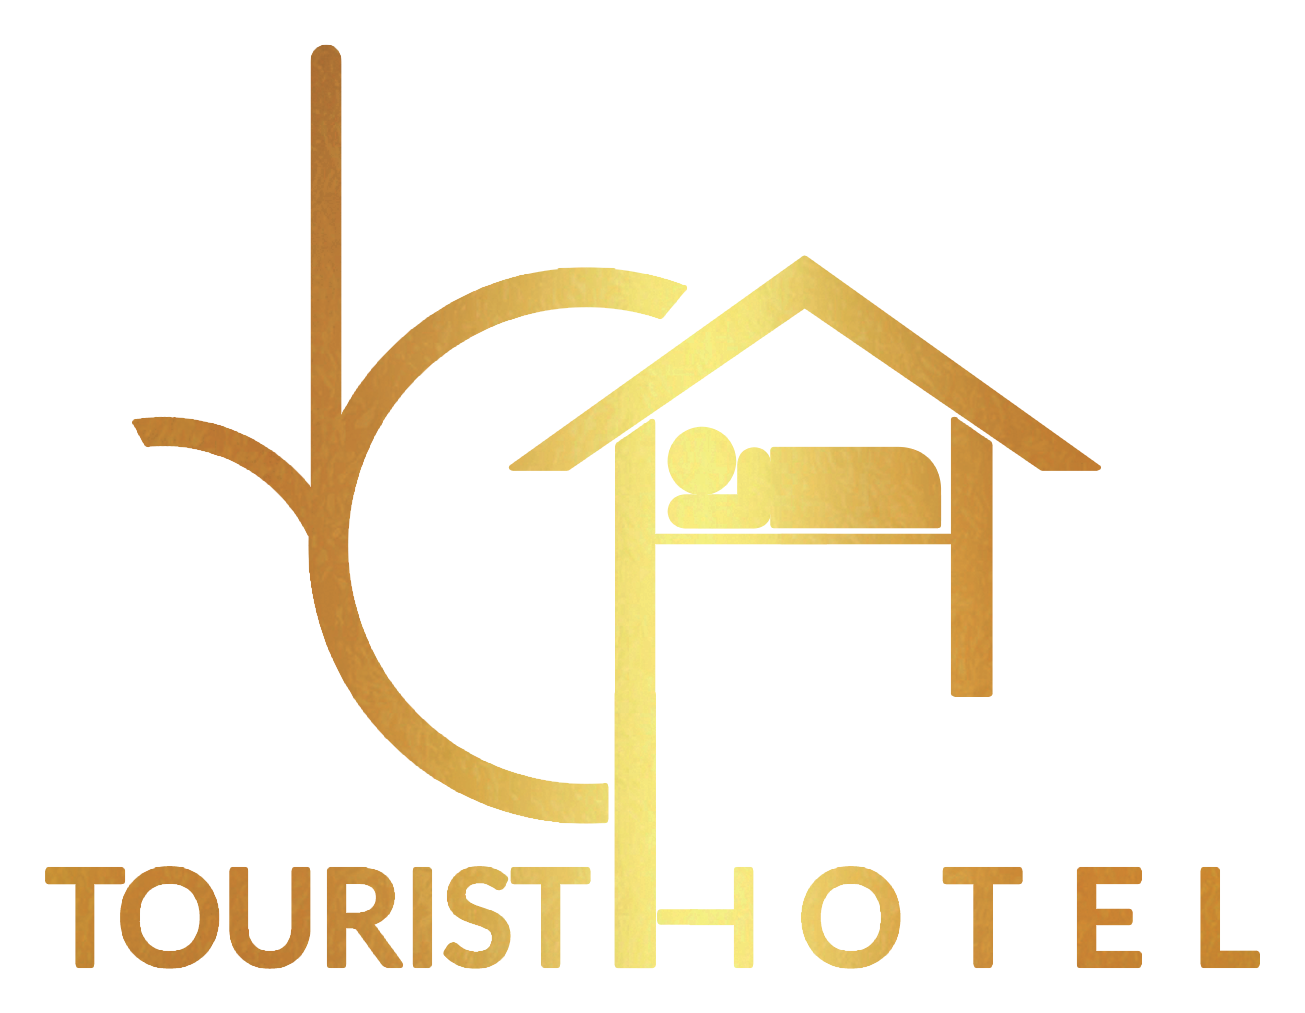 فنادق رخيصة في القاهرة - اسعار فندقات وسط البلد - اقرب فندق لوسط البلد